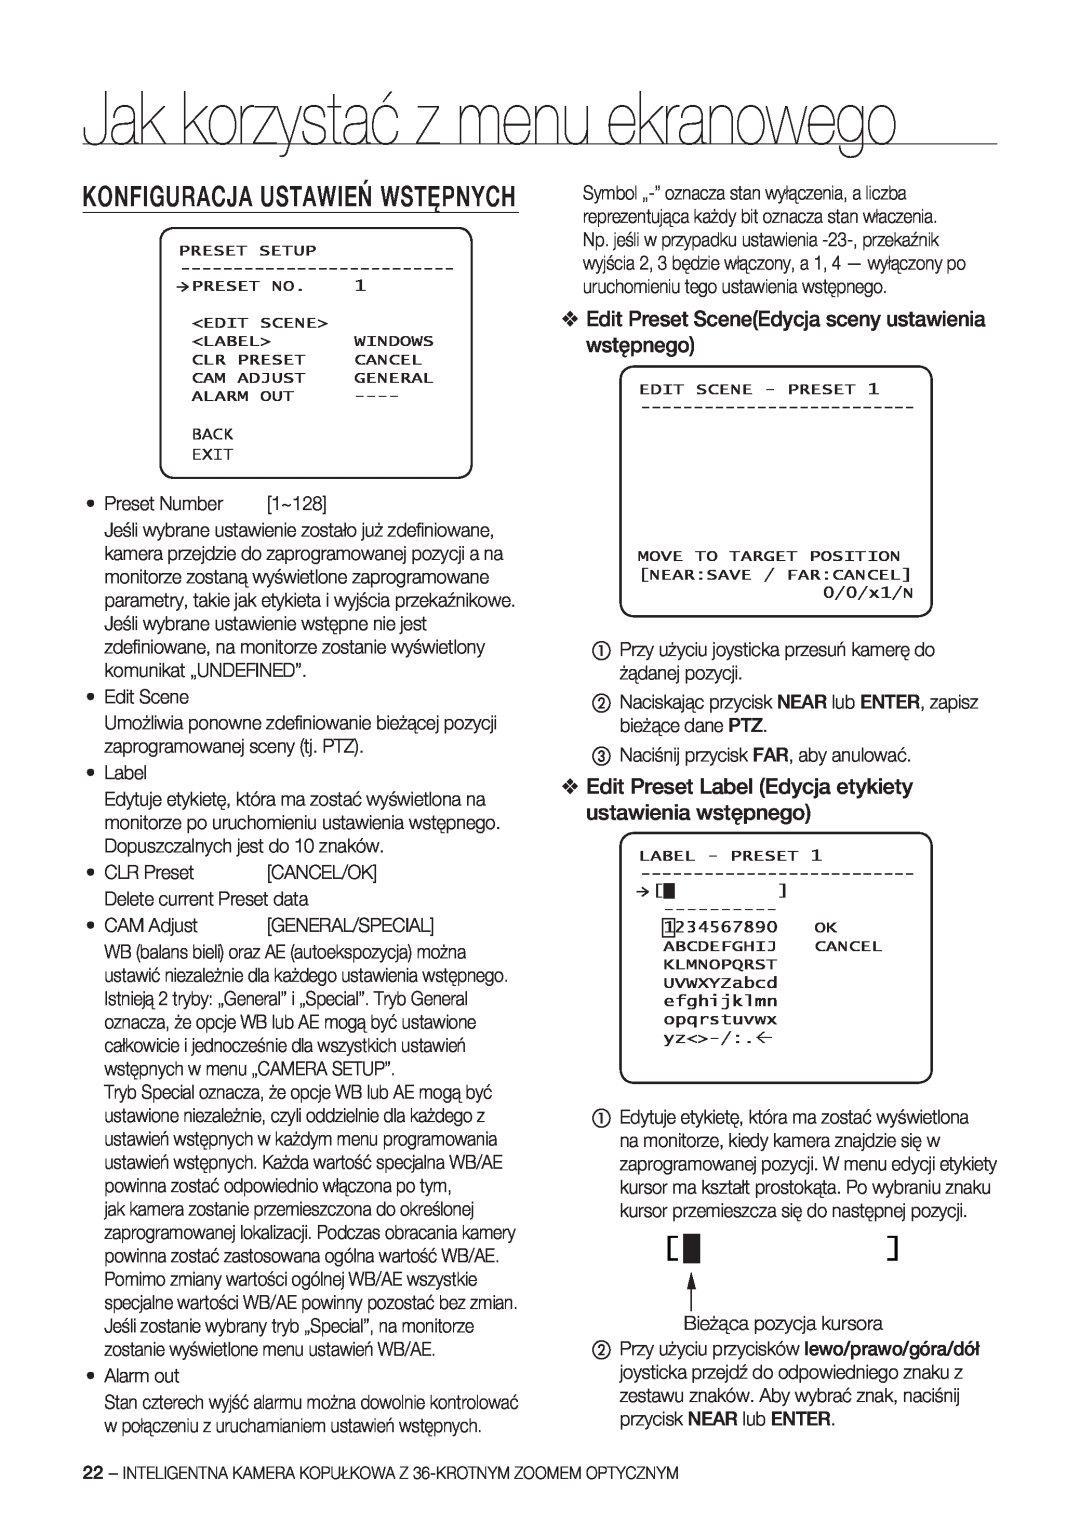 Samsung SCC-C7478P manual Konfiguracja Ustawień Wstępnych, Edit Preset SceneEdycja sceny ustawienia wstępnego 